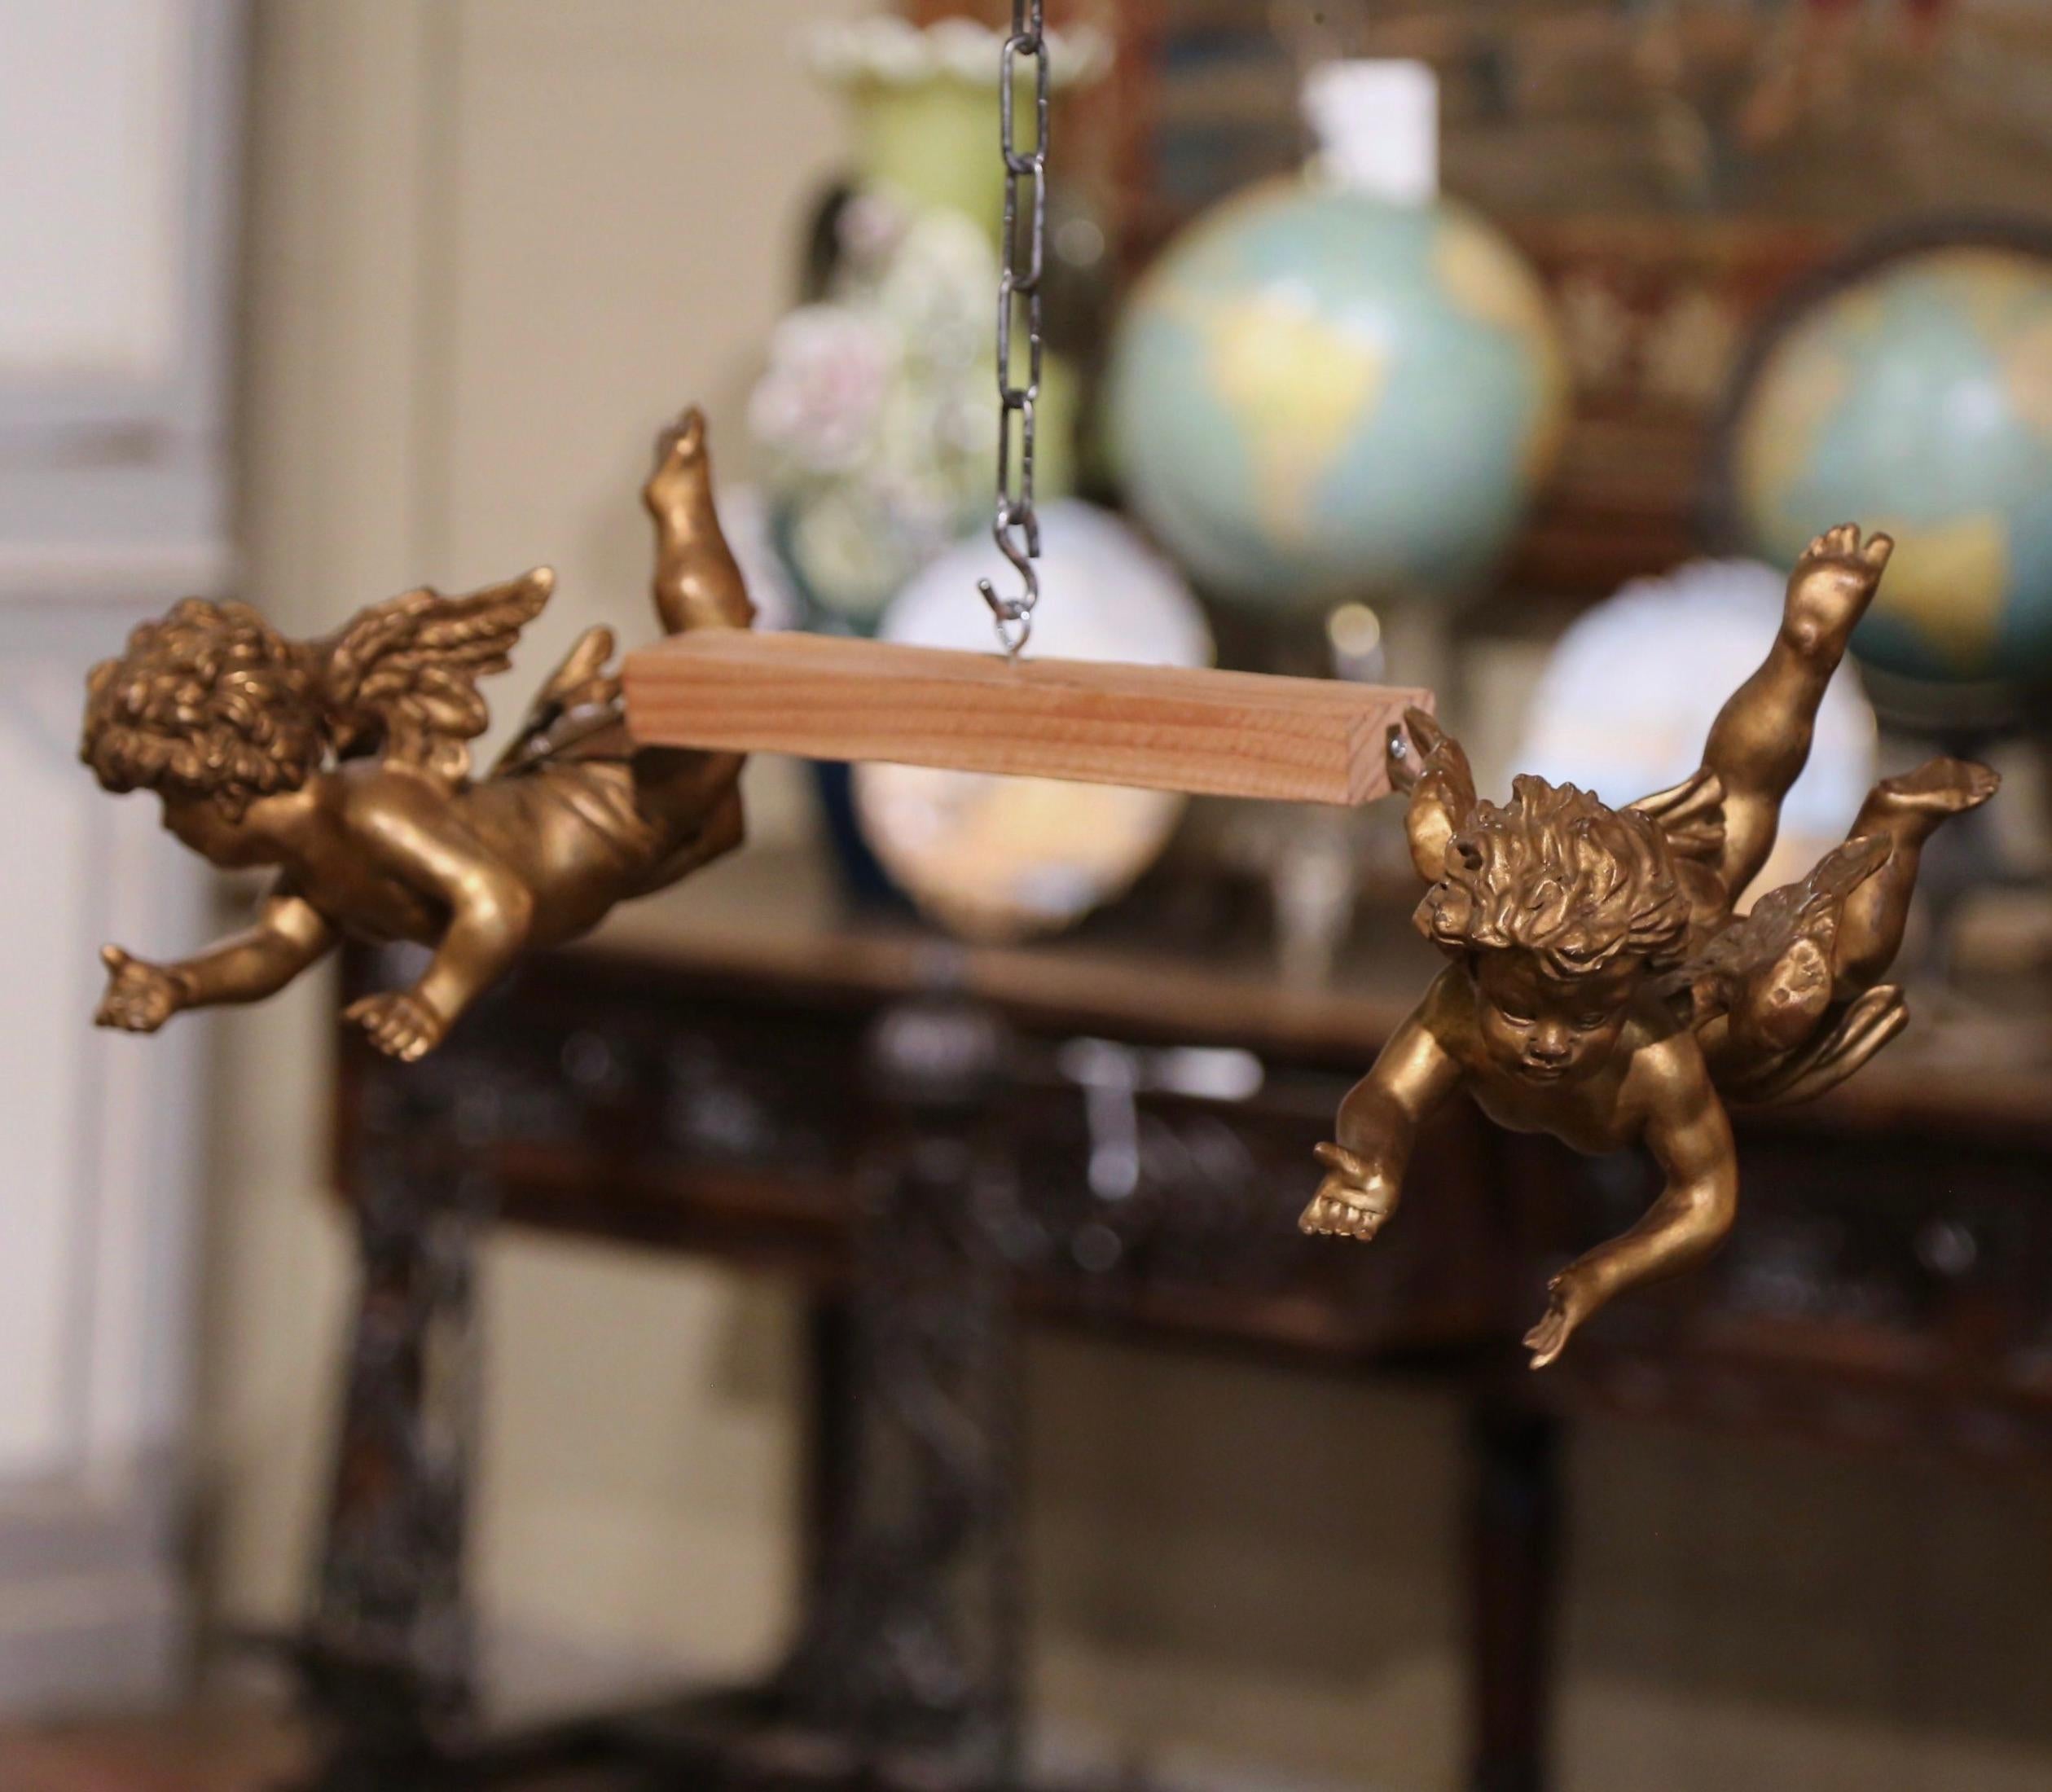 Diese antiken geflügelten Cherubfiguren wurden um 1880 in Italien hergestellt. Die handbemalten Putti-Schnitzereien sind in ihrer Originalfarbe und mit Blattgold veredelt, was für ein luxuriöses Ergebnis sorgt. Die handgeschnitzten pausbäckigen